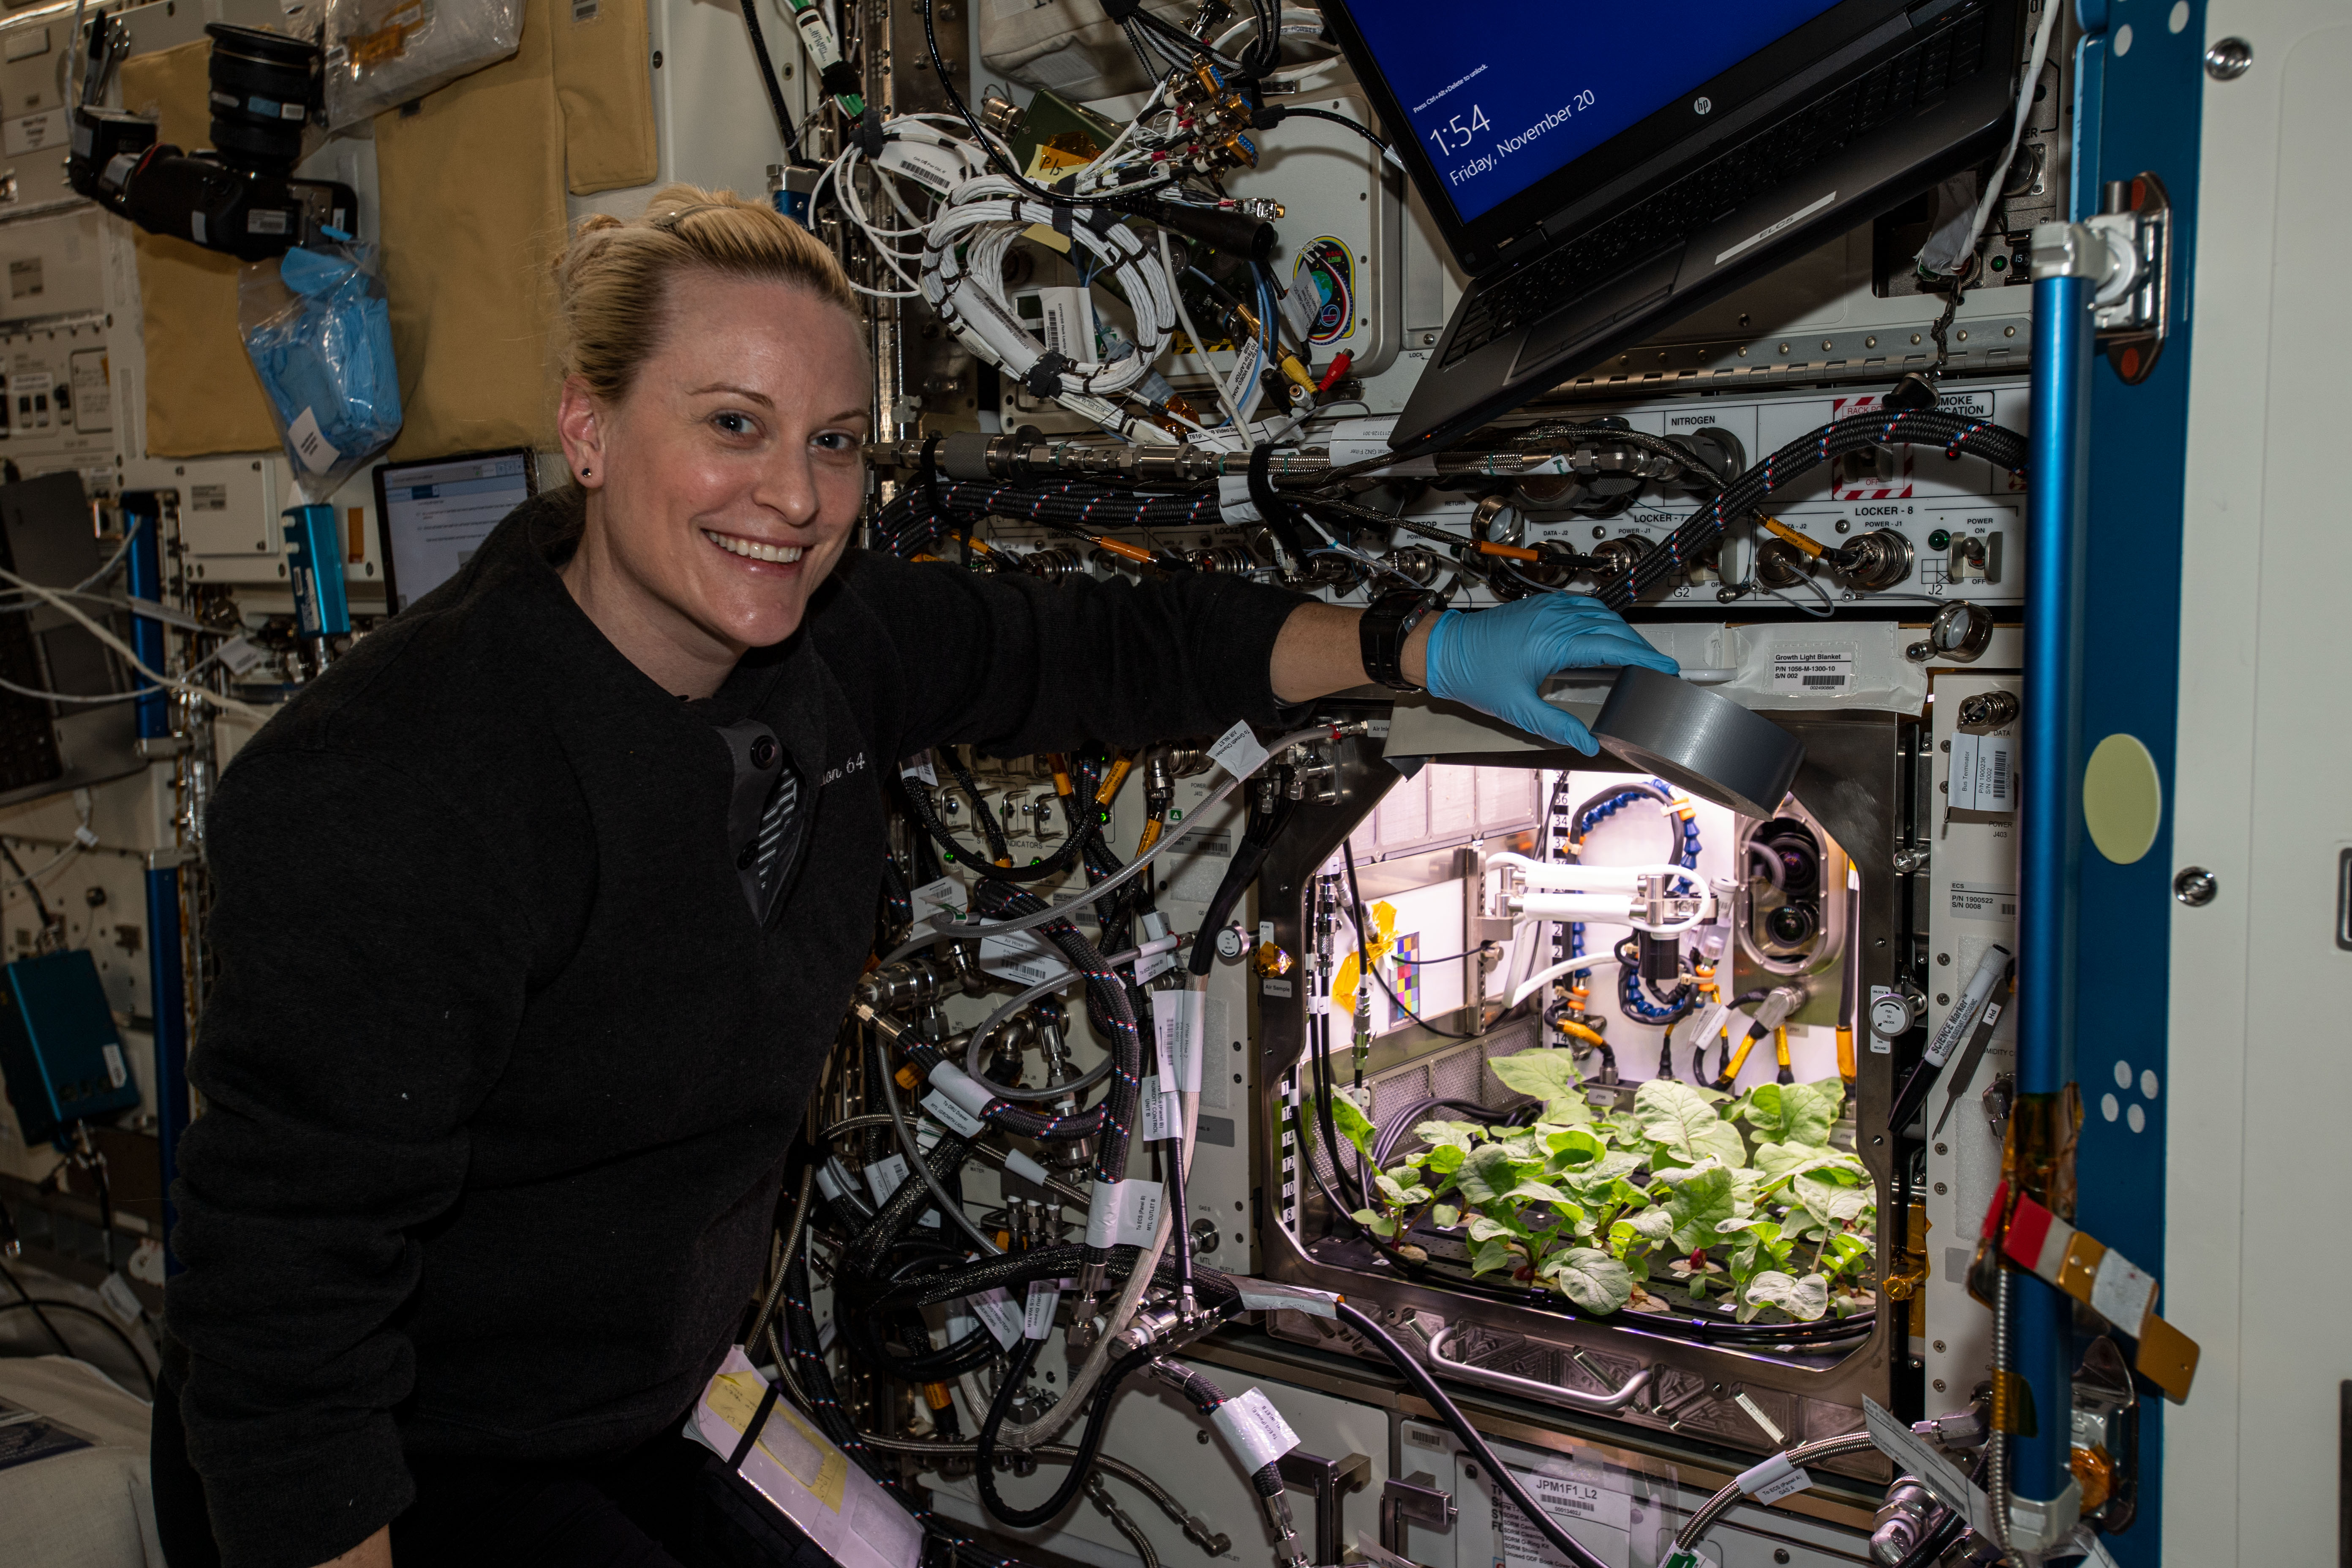 Какой овощ вырастили на космической станции. Опыты с растениями на МКС (Международная Космическая станция). Оранжерея Veggie МКС. Первый редис выращенный на МКС. Растения в космосе.